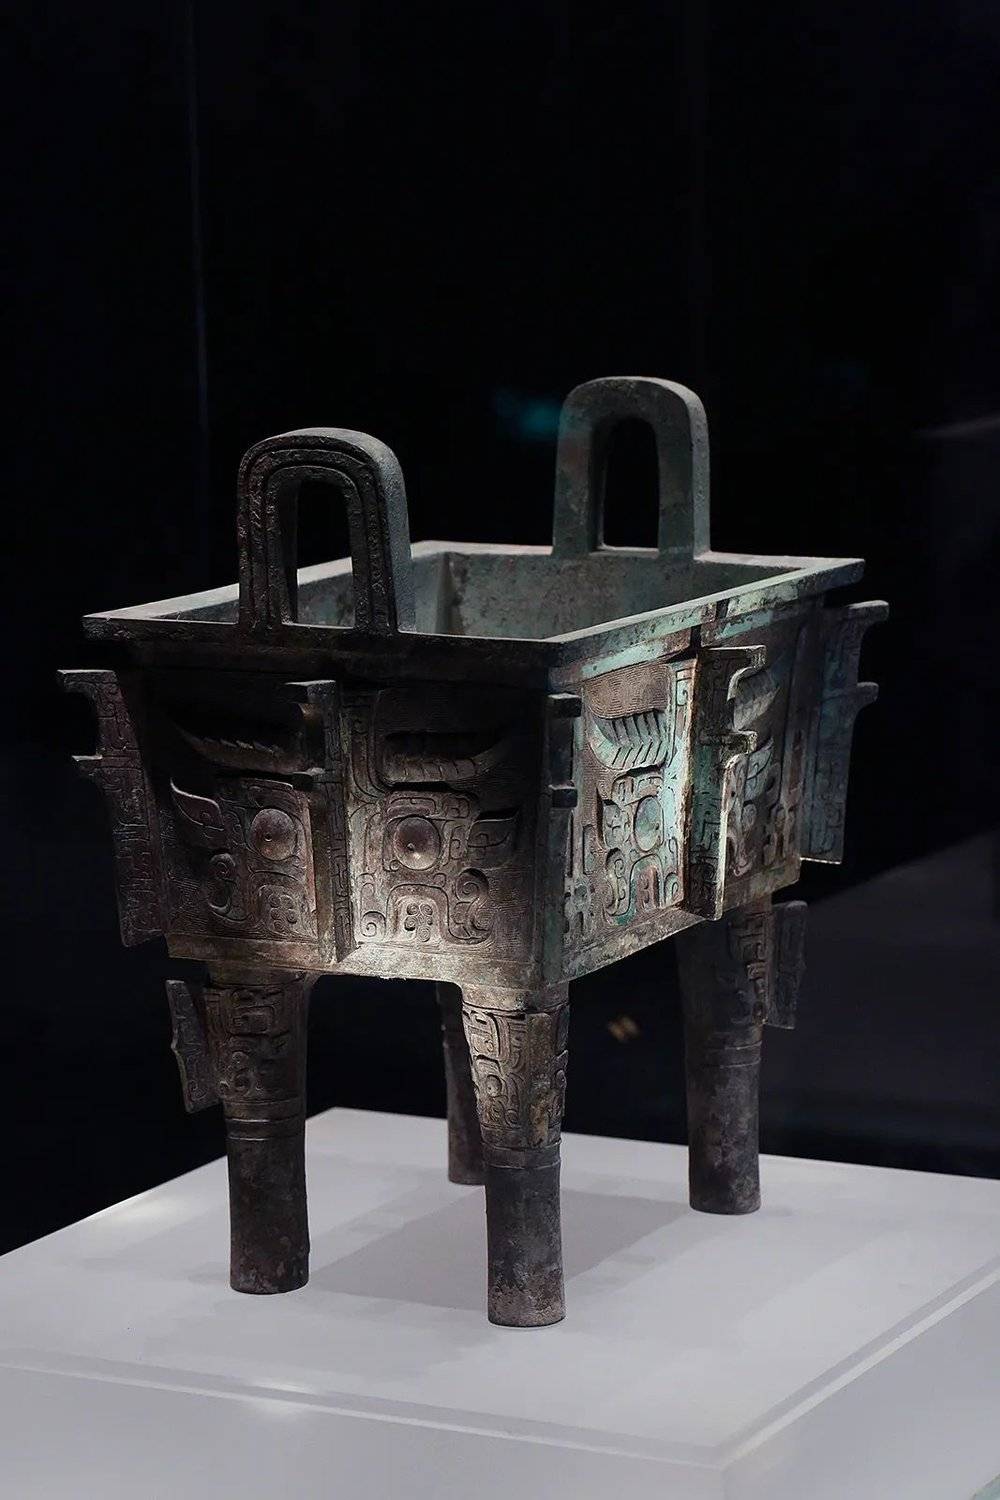 洛阳北窑出土的西周兽面纹方鼎，周代青铜礼器的代表作。摄影/动脉影